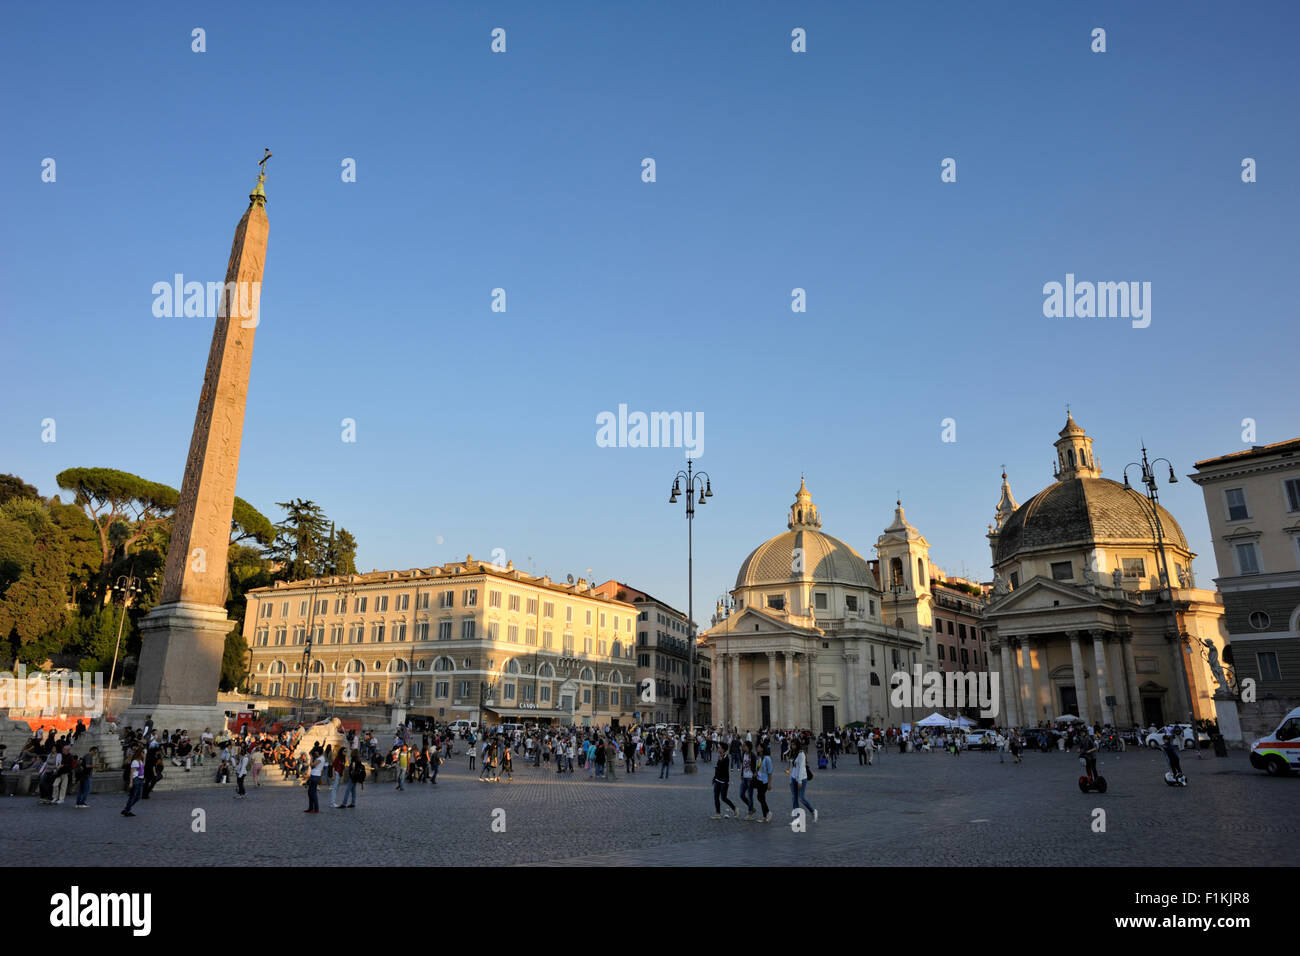 Italie, Rome, Piazza del Popolo, obélisque et églises de Santa Maria di Montesanto (à gauche) et Santa Maria dei Miracoli (à droite) Banque D'Images